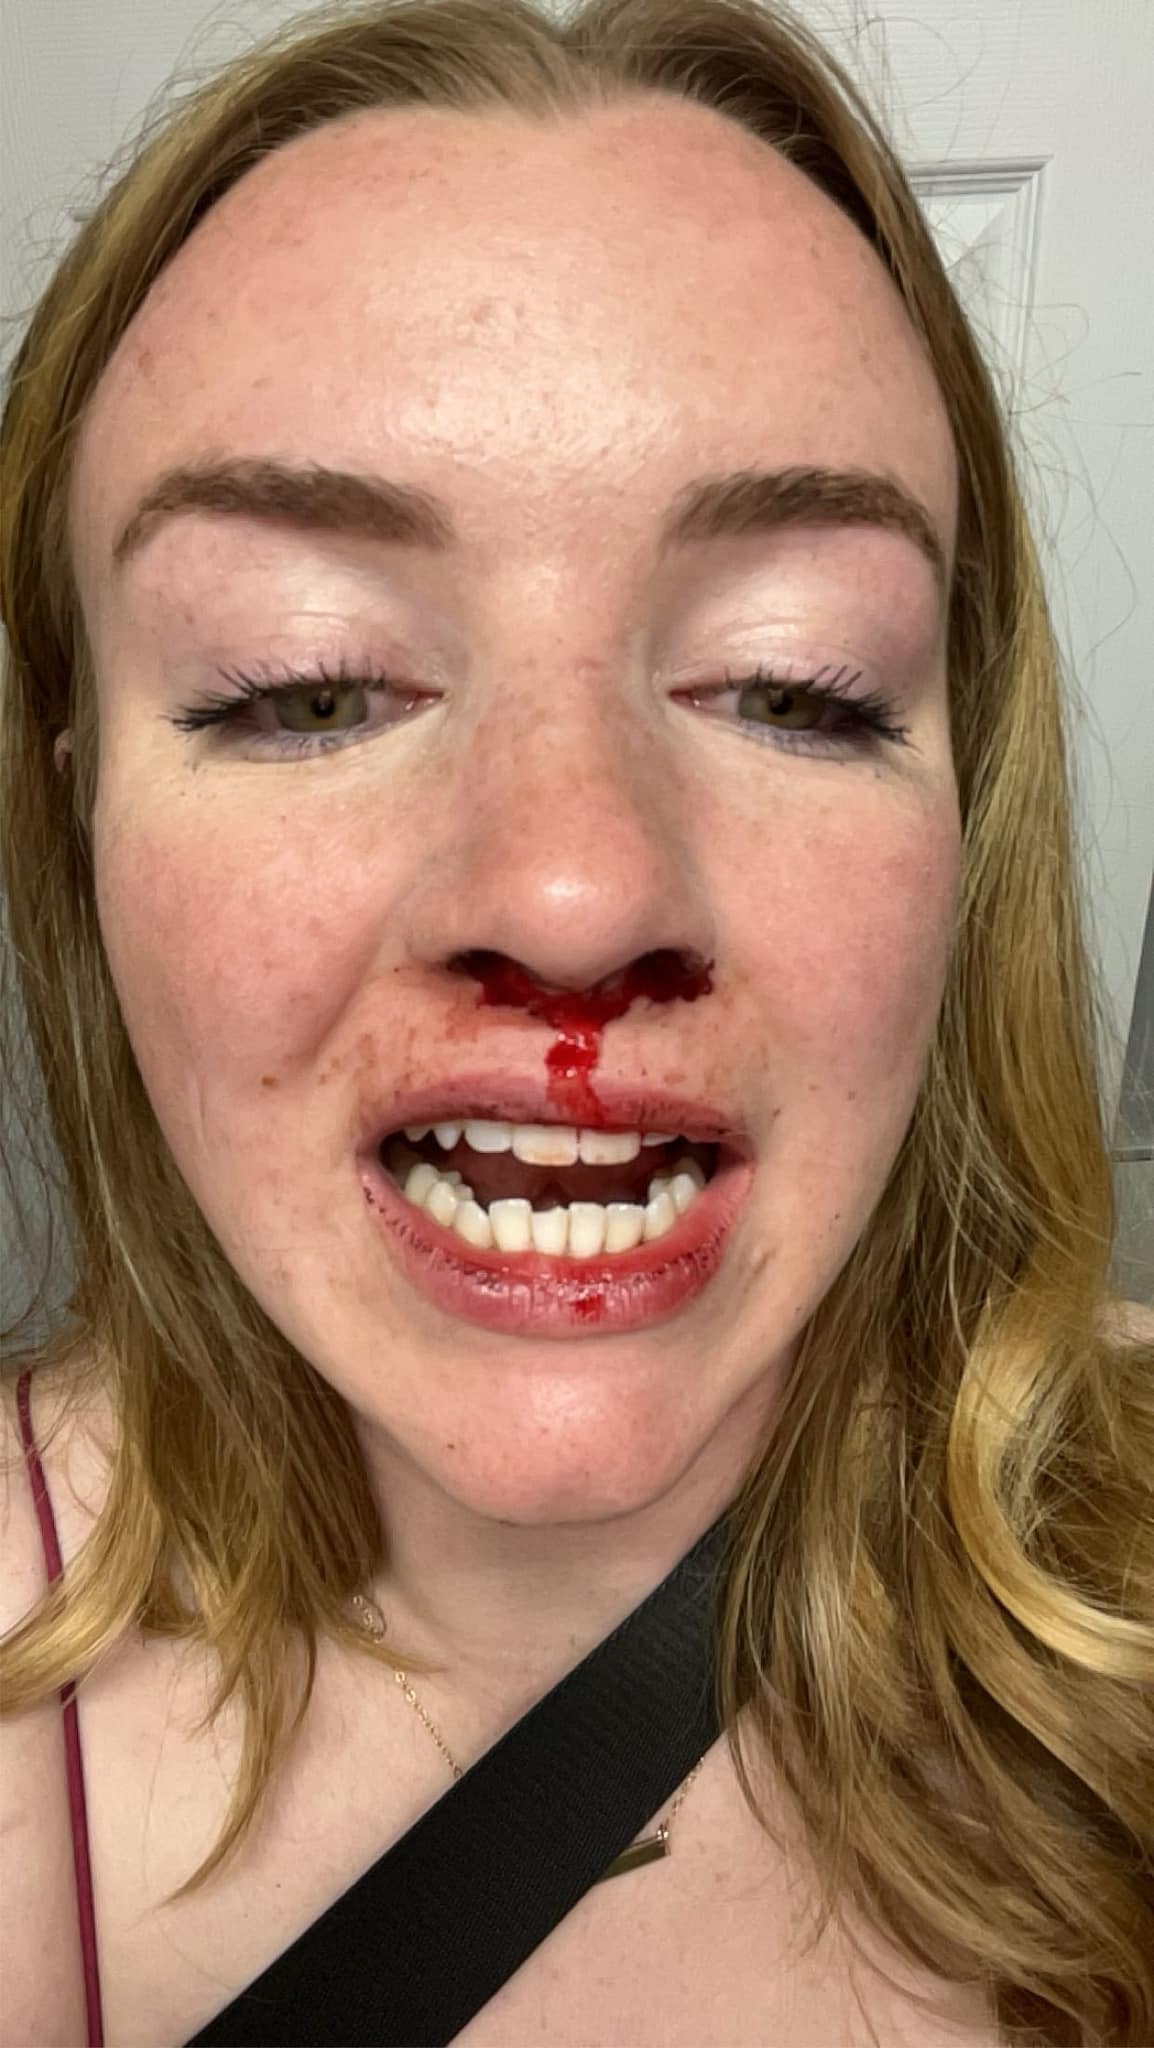 Tori sofreu ferimentos na face após agressão causada por homofobia Reprodução/Redes Sociais/Emma MacLean 